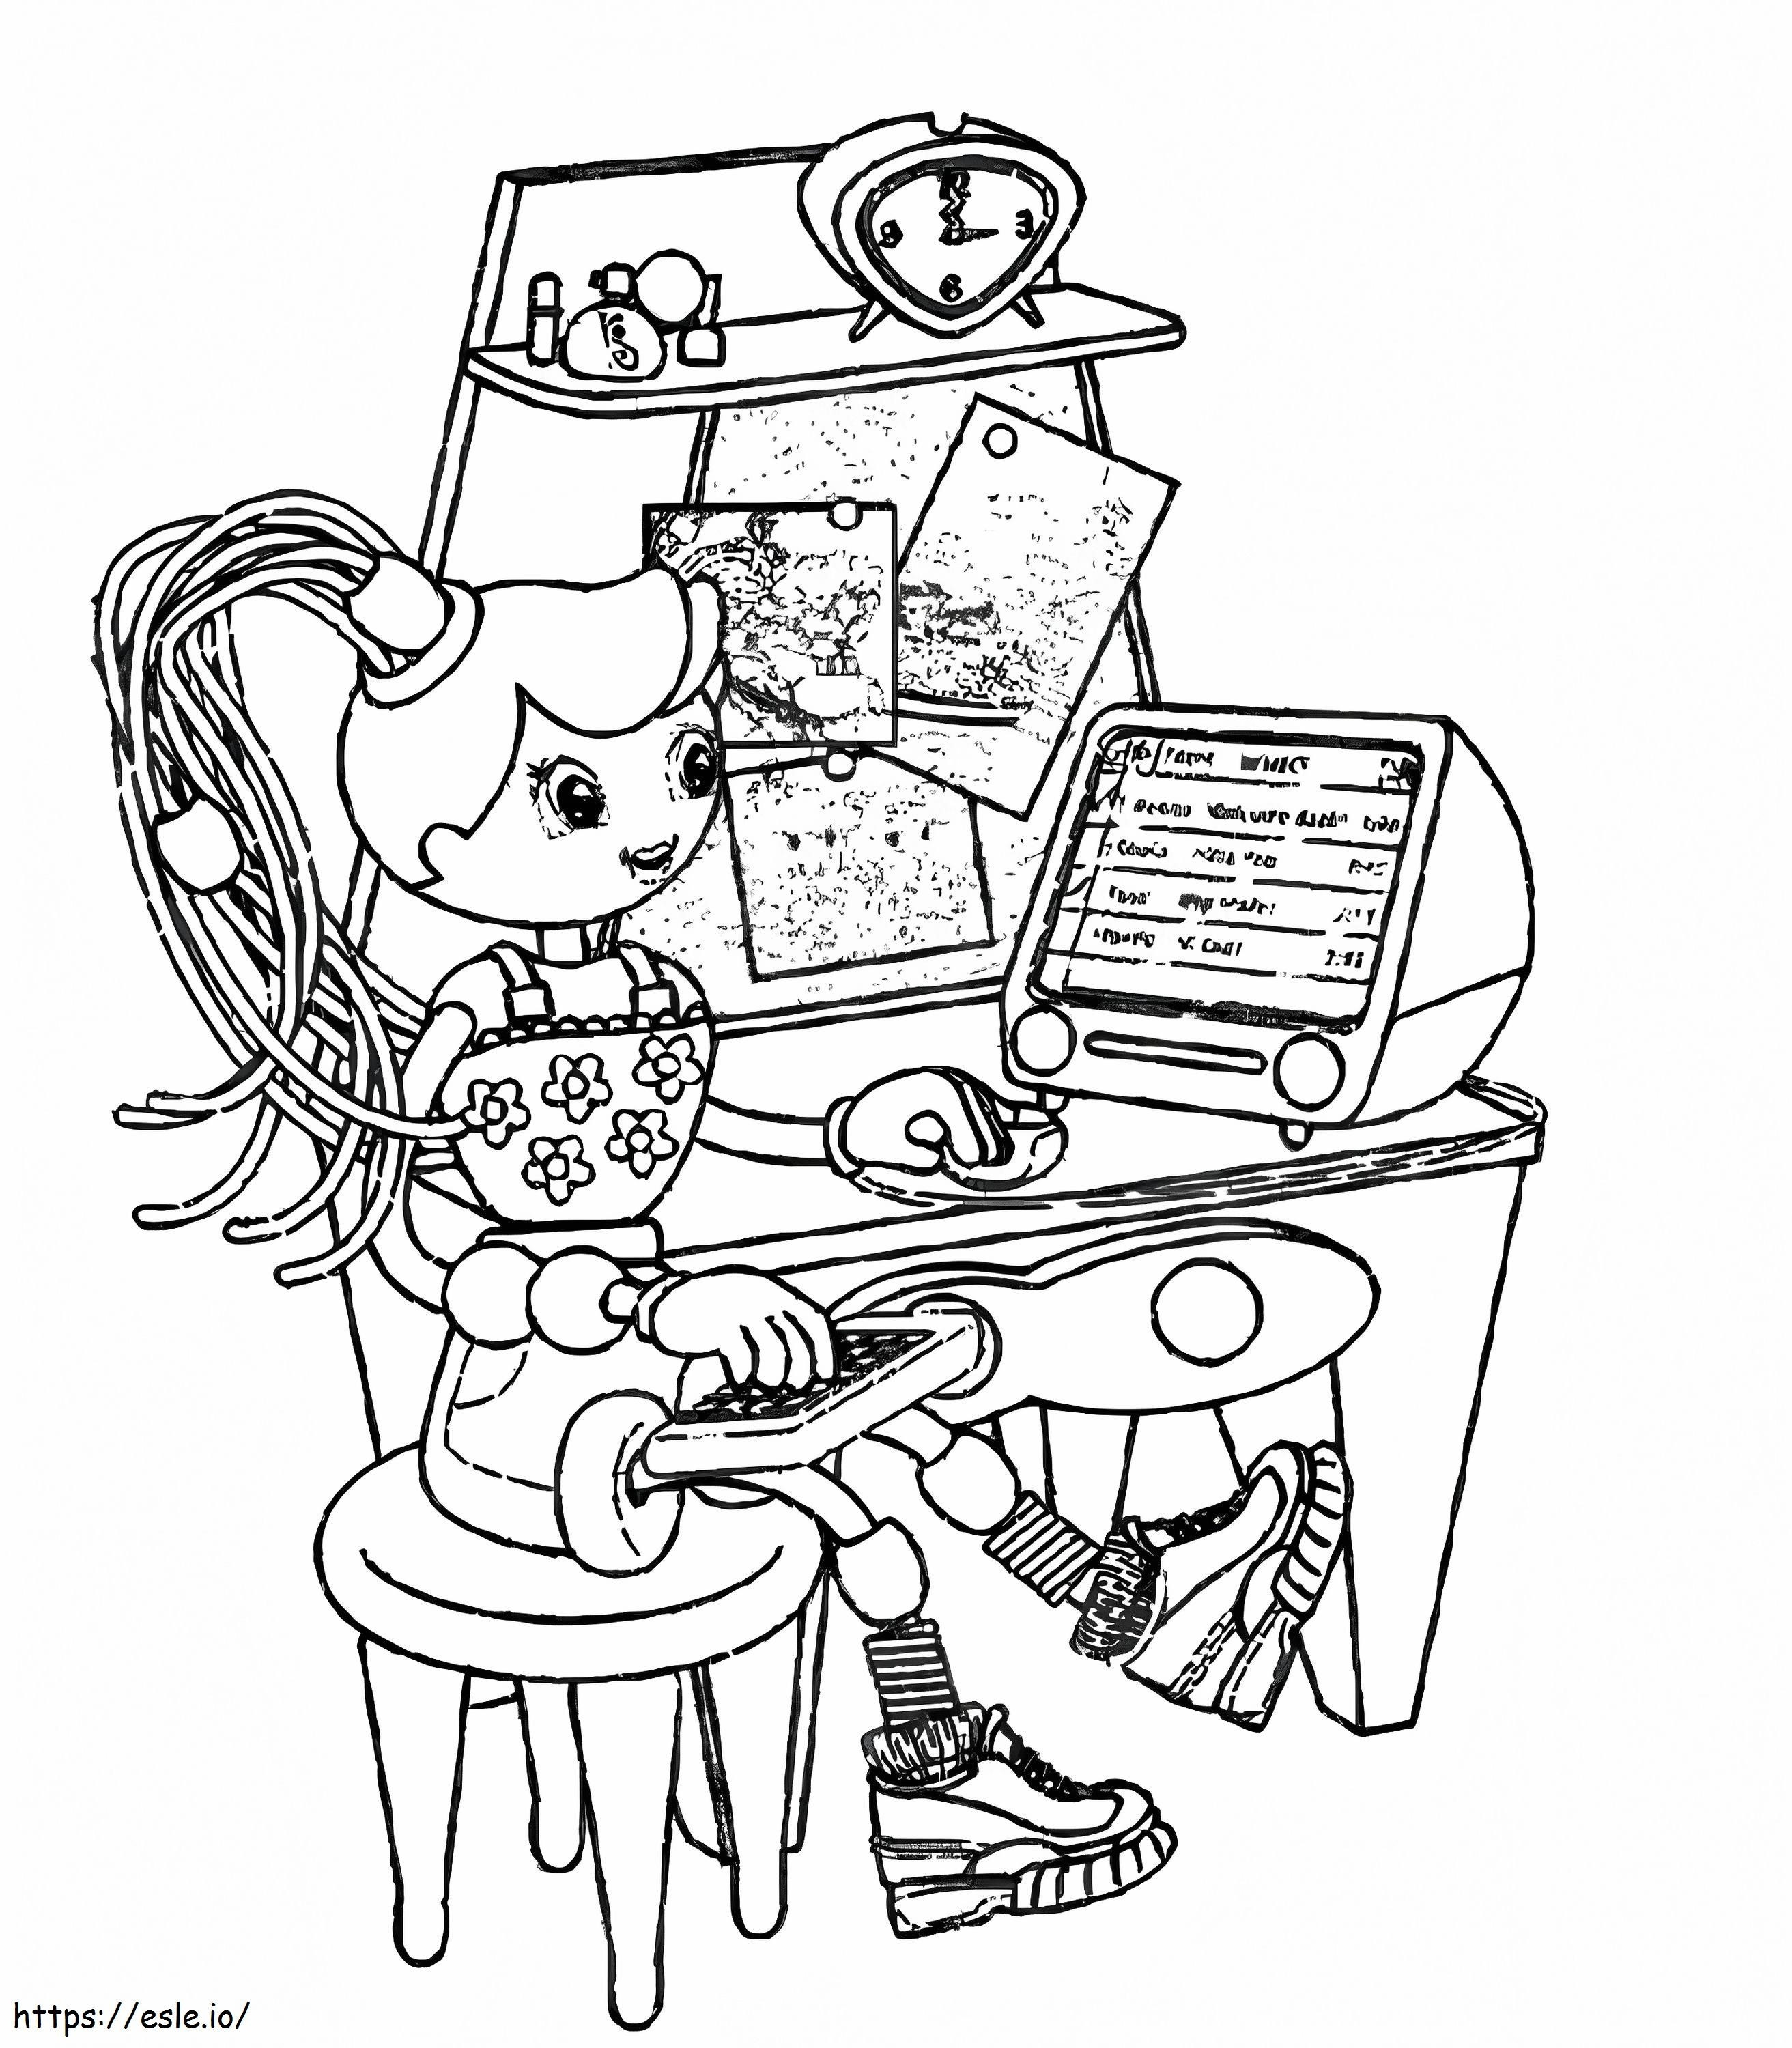 Betty Spaghetti folosind computerul de colorat